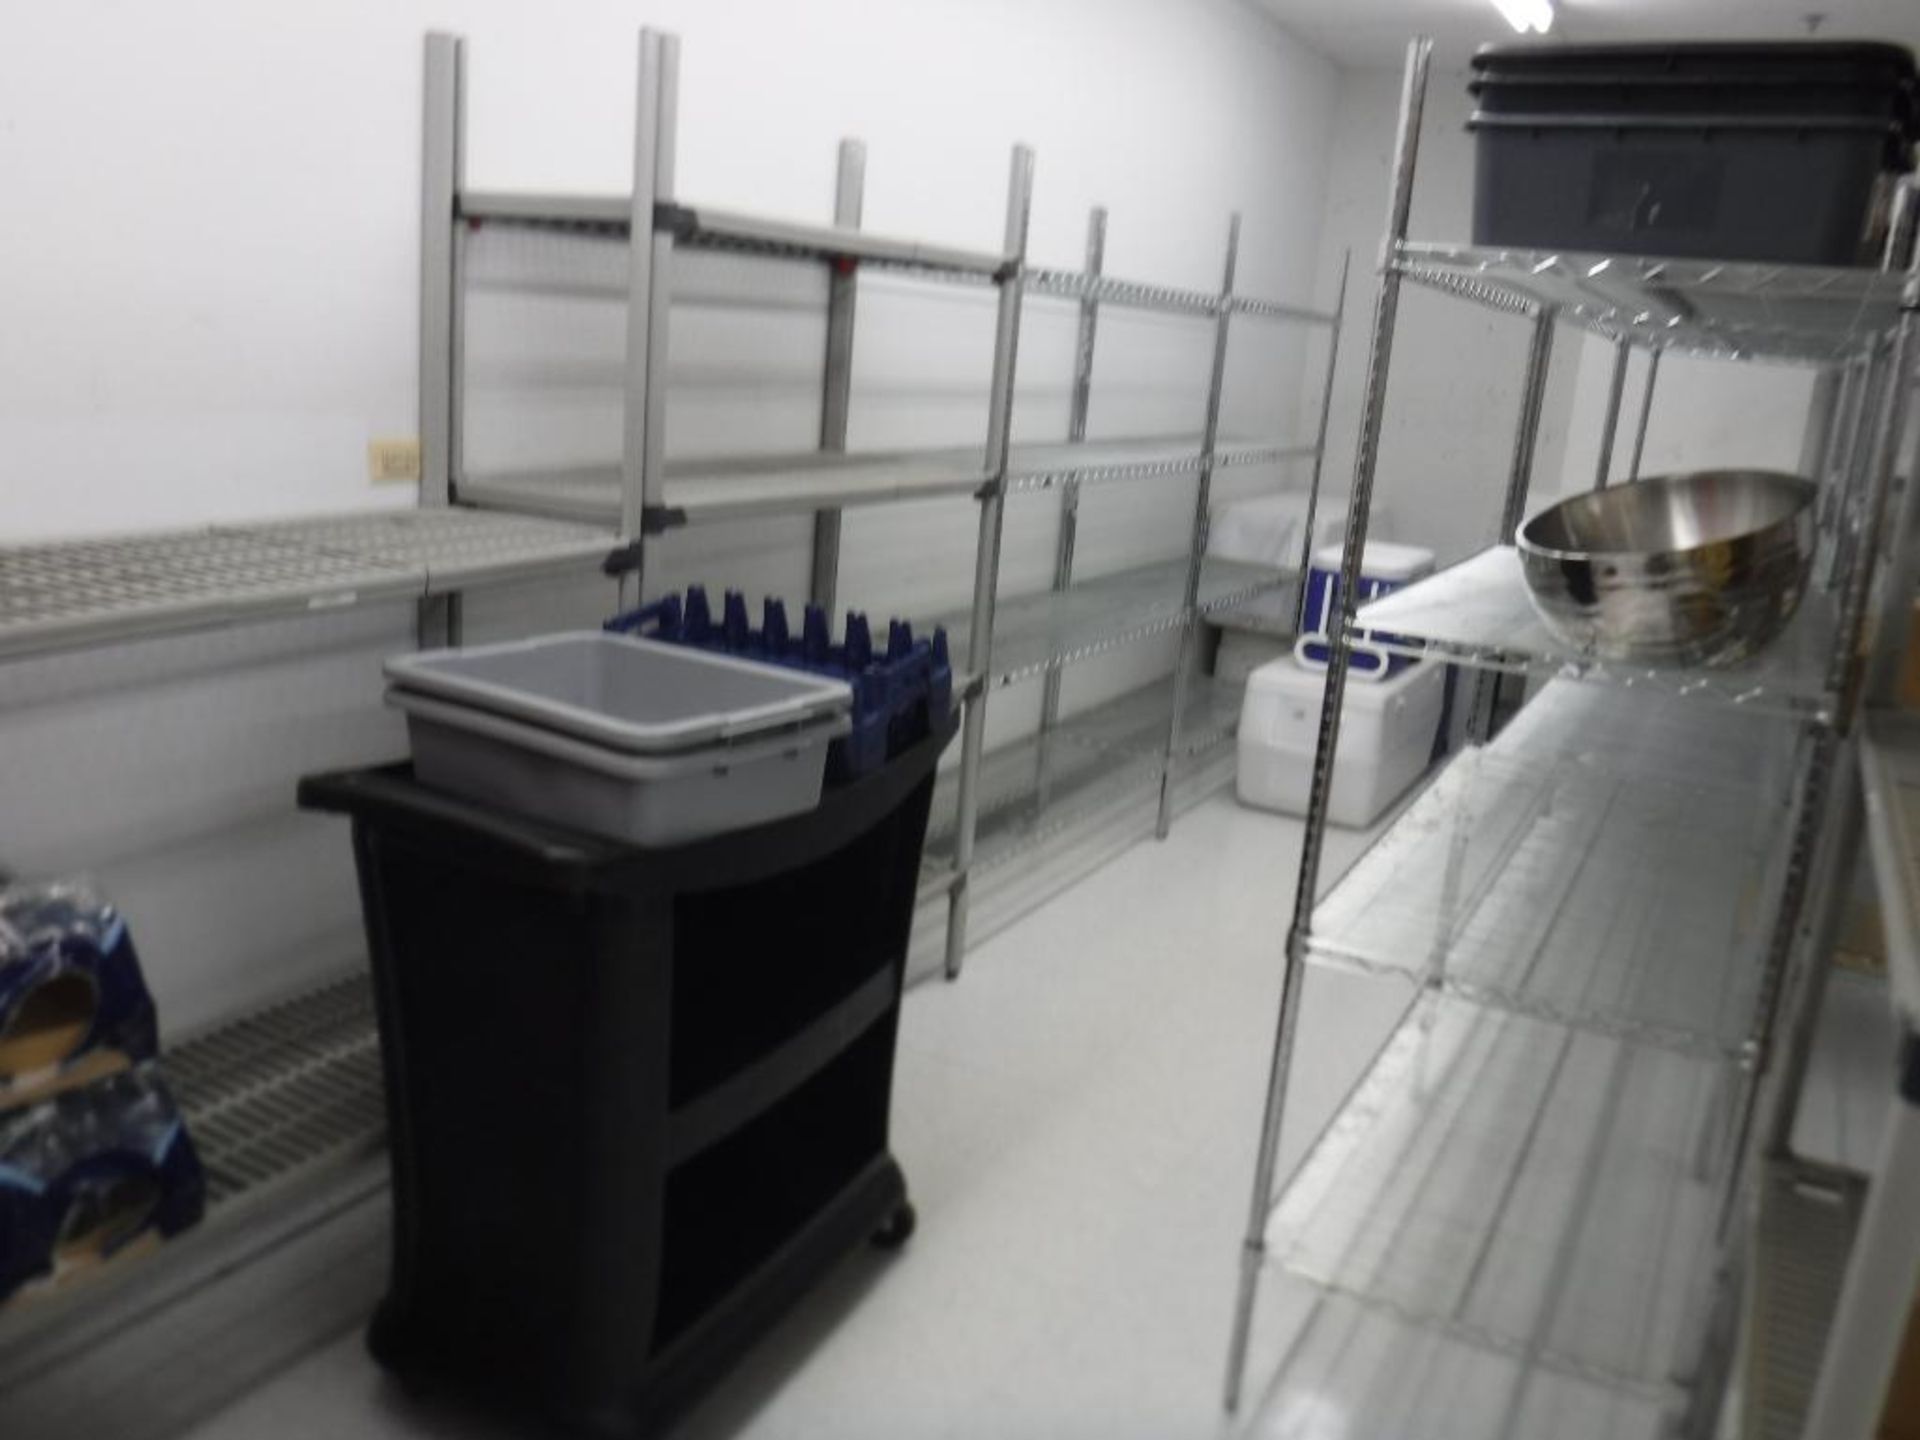 Lot c/o: Food Service Storage Room- Plastic Forks & Knives, B3000SE Keurig, Rolling Carts, Metal She - Image 3 of 4